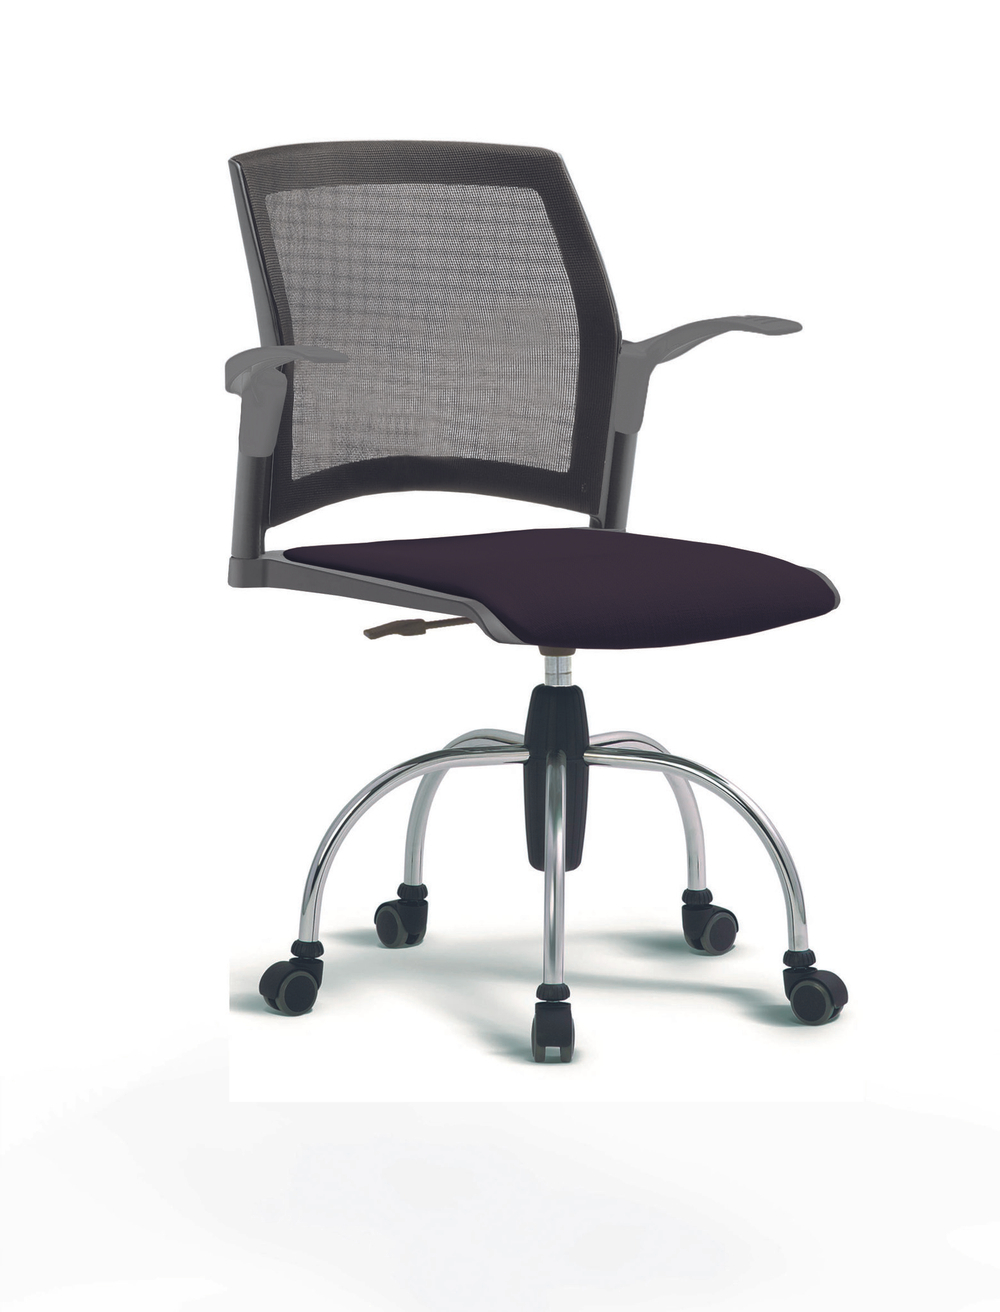 Кресло Rewind каркас хромированный, пластик серый, база паук хромированная, с открытыми подлокотниками, сидение черное, спинка-сетка